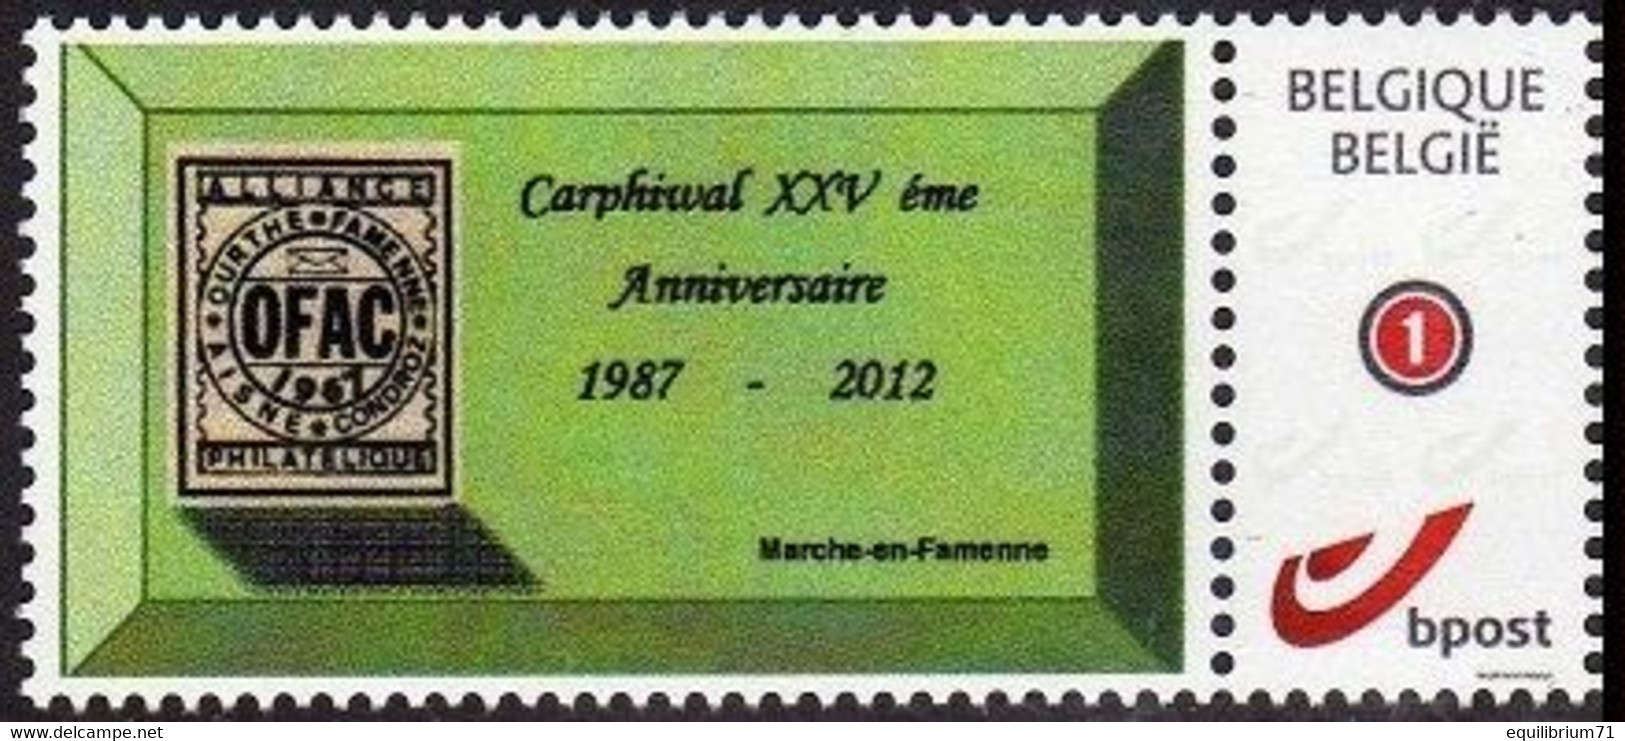 DUOSTAMP** / MYSTAMP** - Carphiwal XXVème Anniversaire 1987/2012 - Ungebraucht